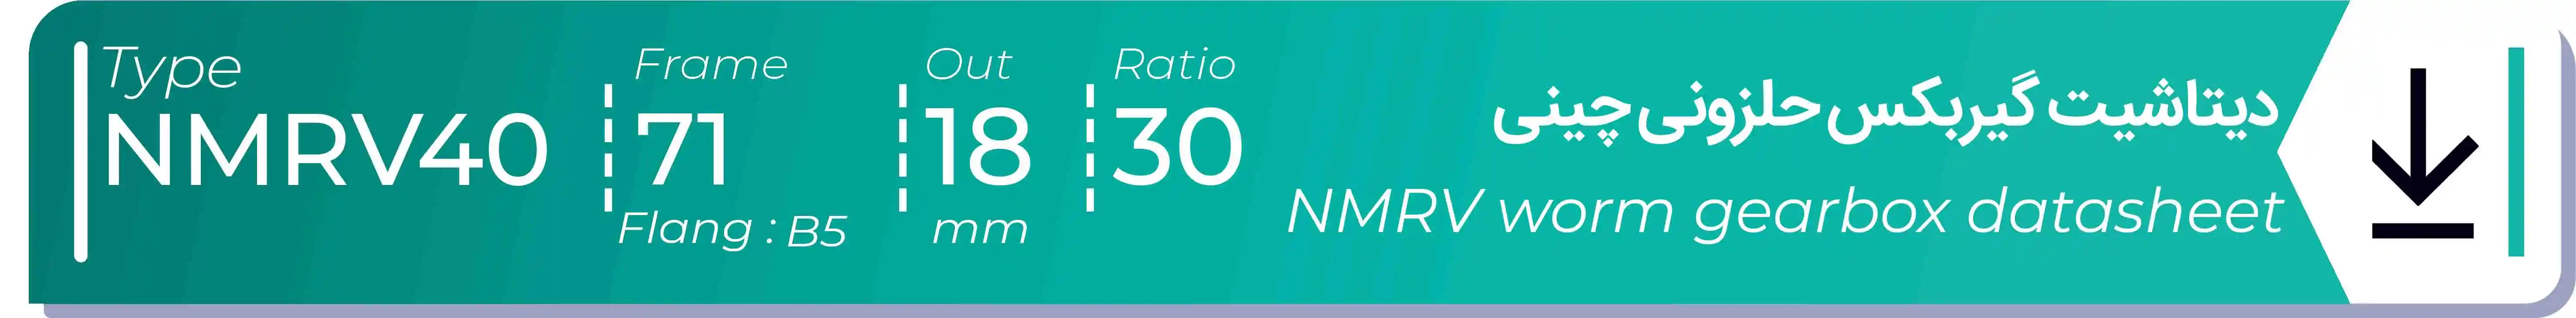  دیتاشیت و مشخصات فنی گیربکس حلزونی چینی   NMRV40  -  با خروجی 18- میلی متر و نسبت30 و فریم 71